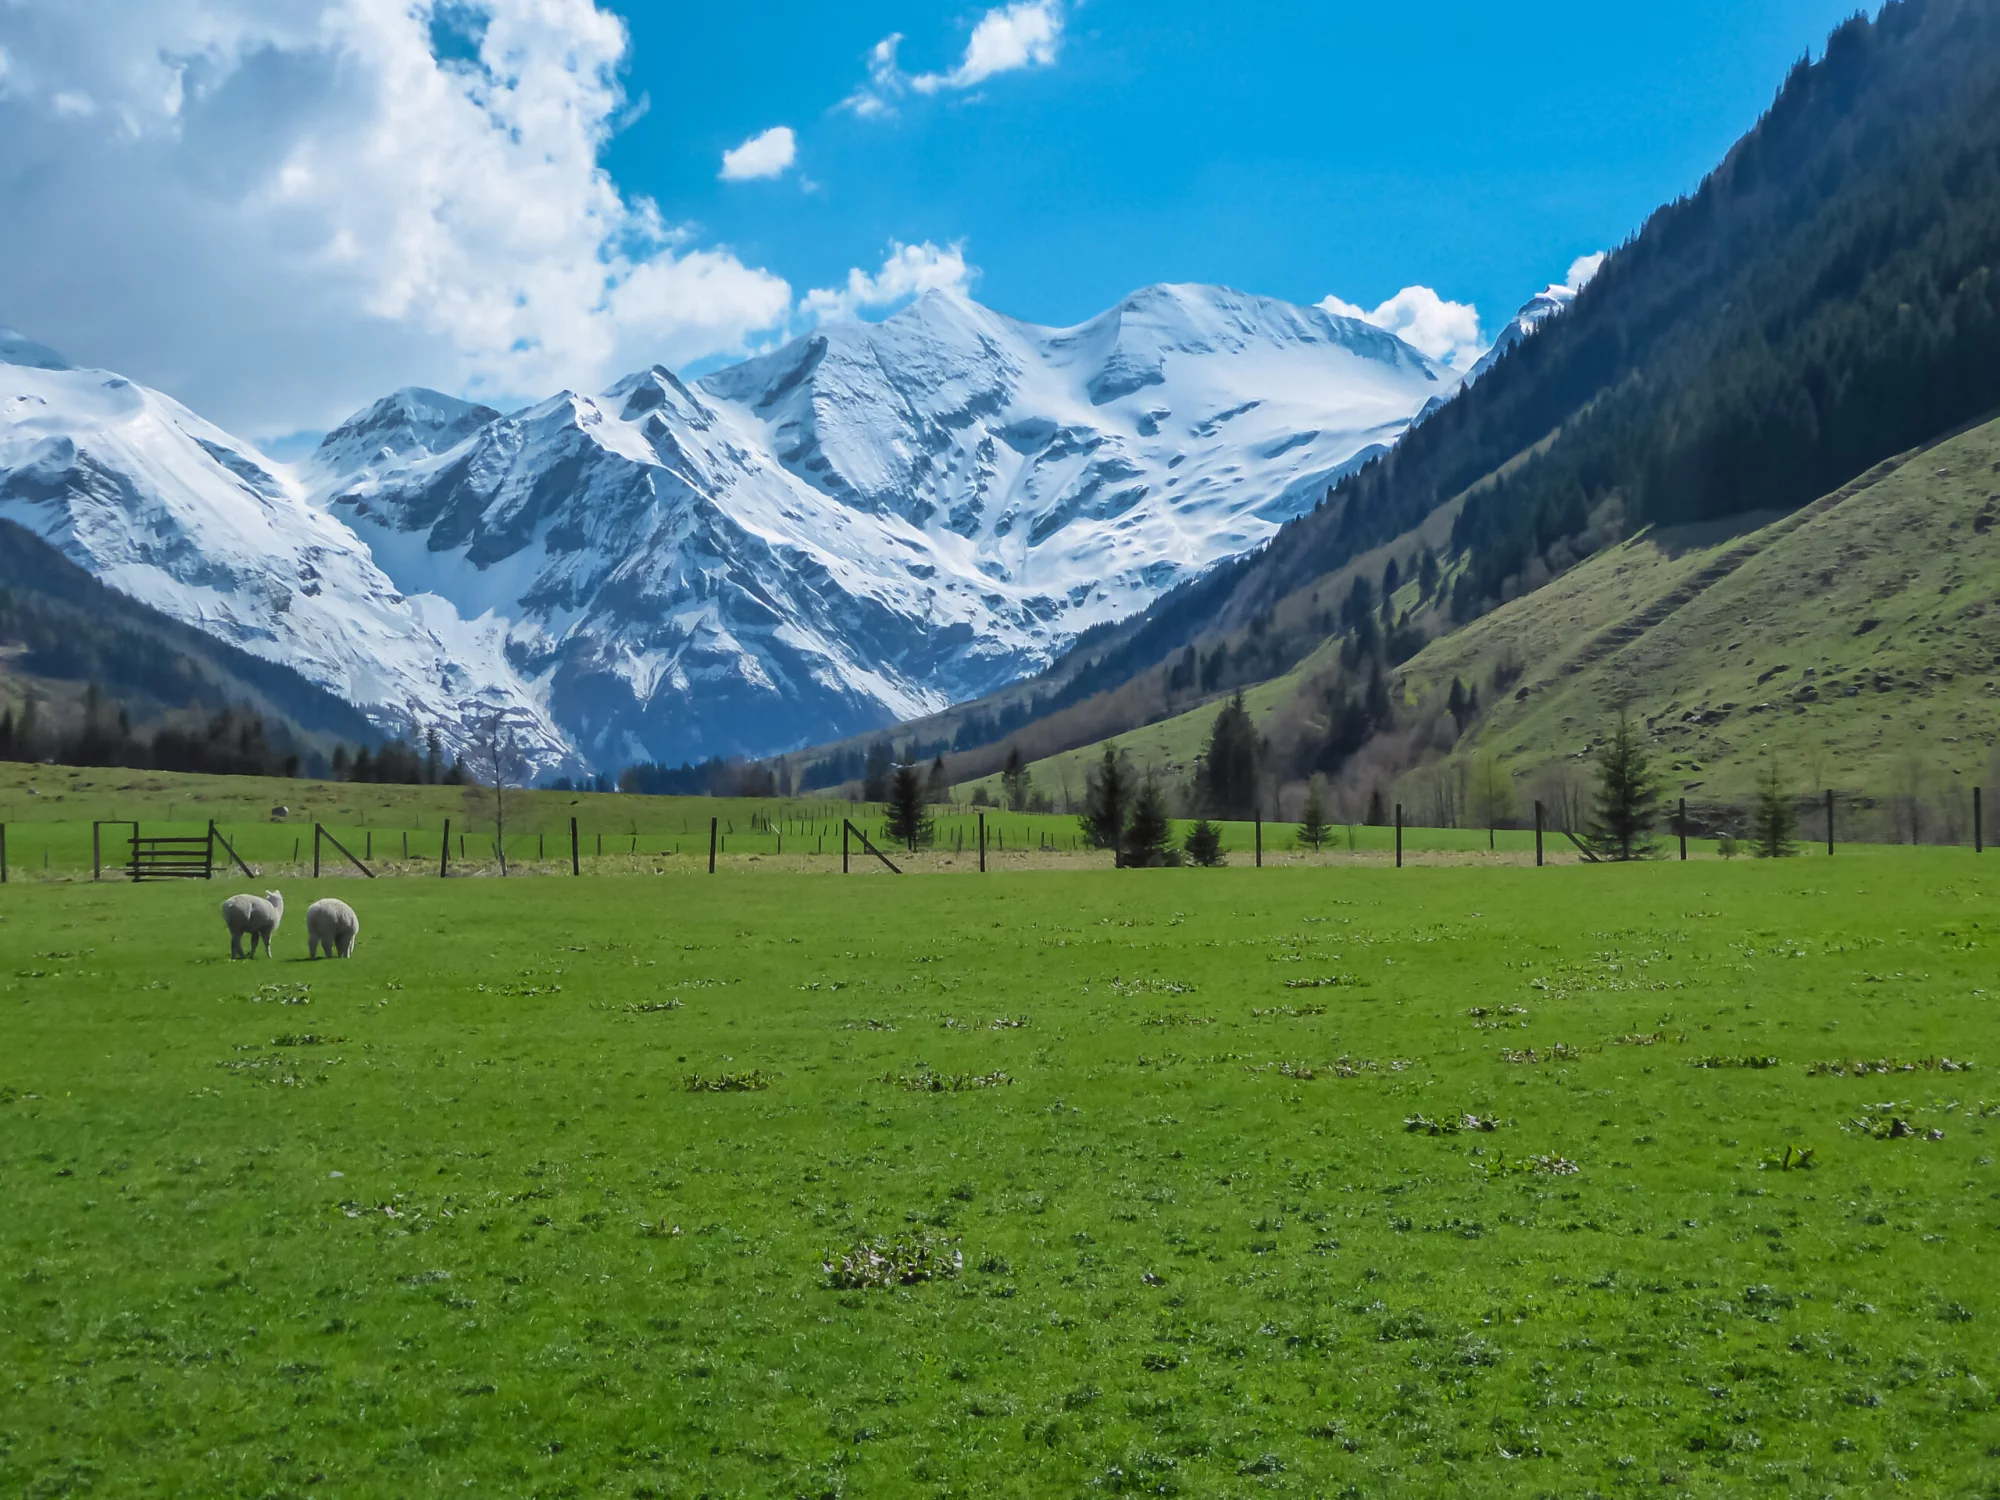 Moutons broutant dans une prairie alpine verdoyante avec vue panoramique sur les sommets enneigés des High Tauern à Fusch am Grossglockner, Salzbourg, Autriche. Belle nature dans les Alpes autrichiennes reculées